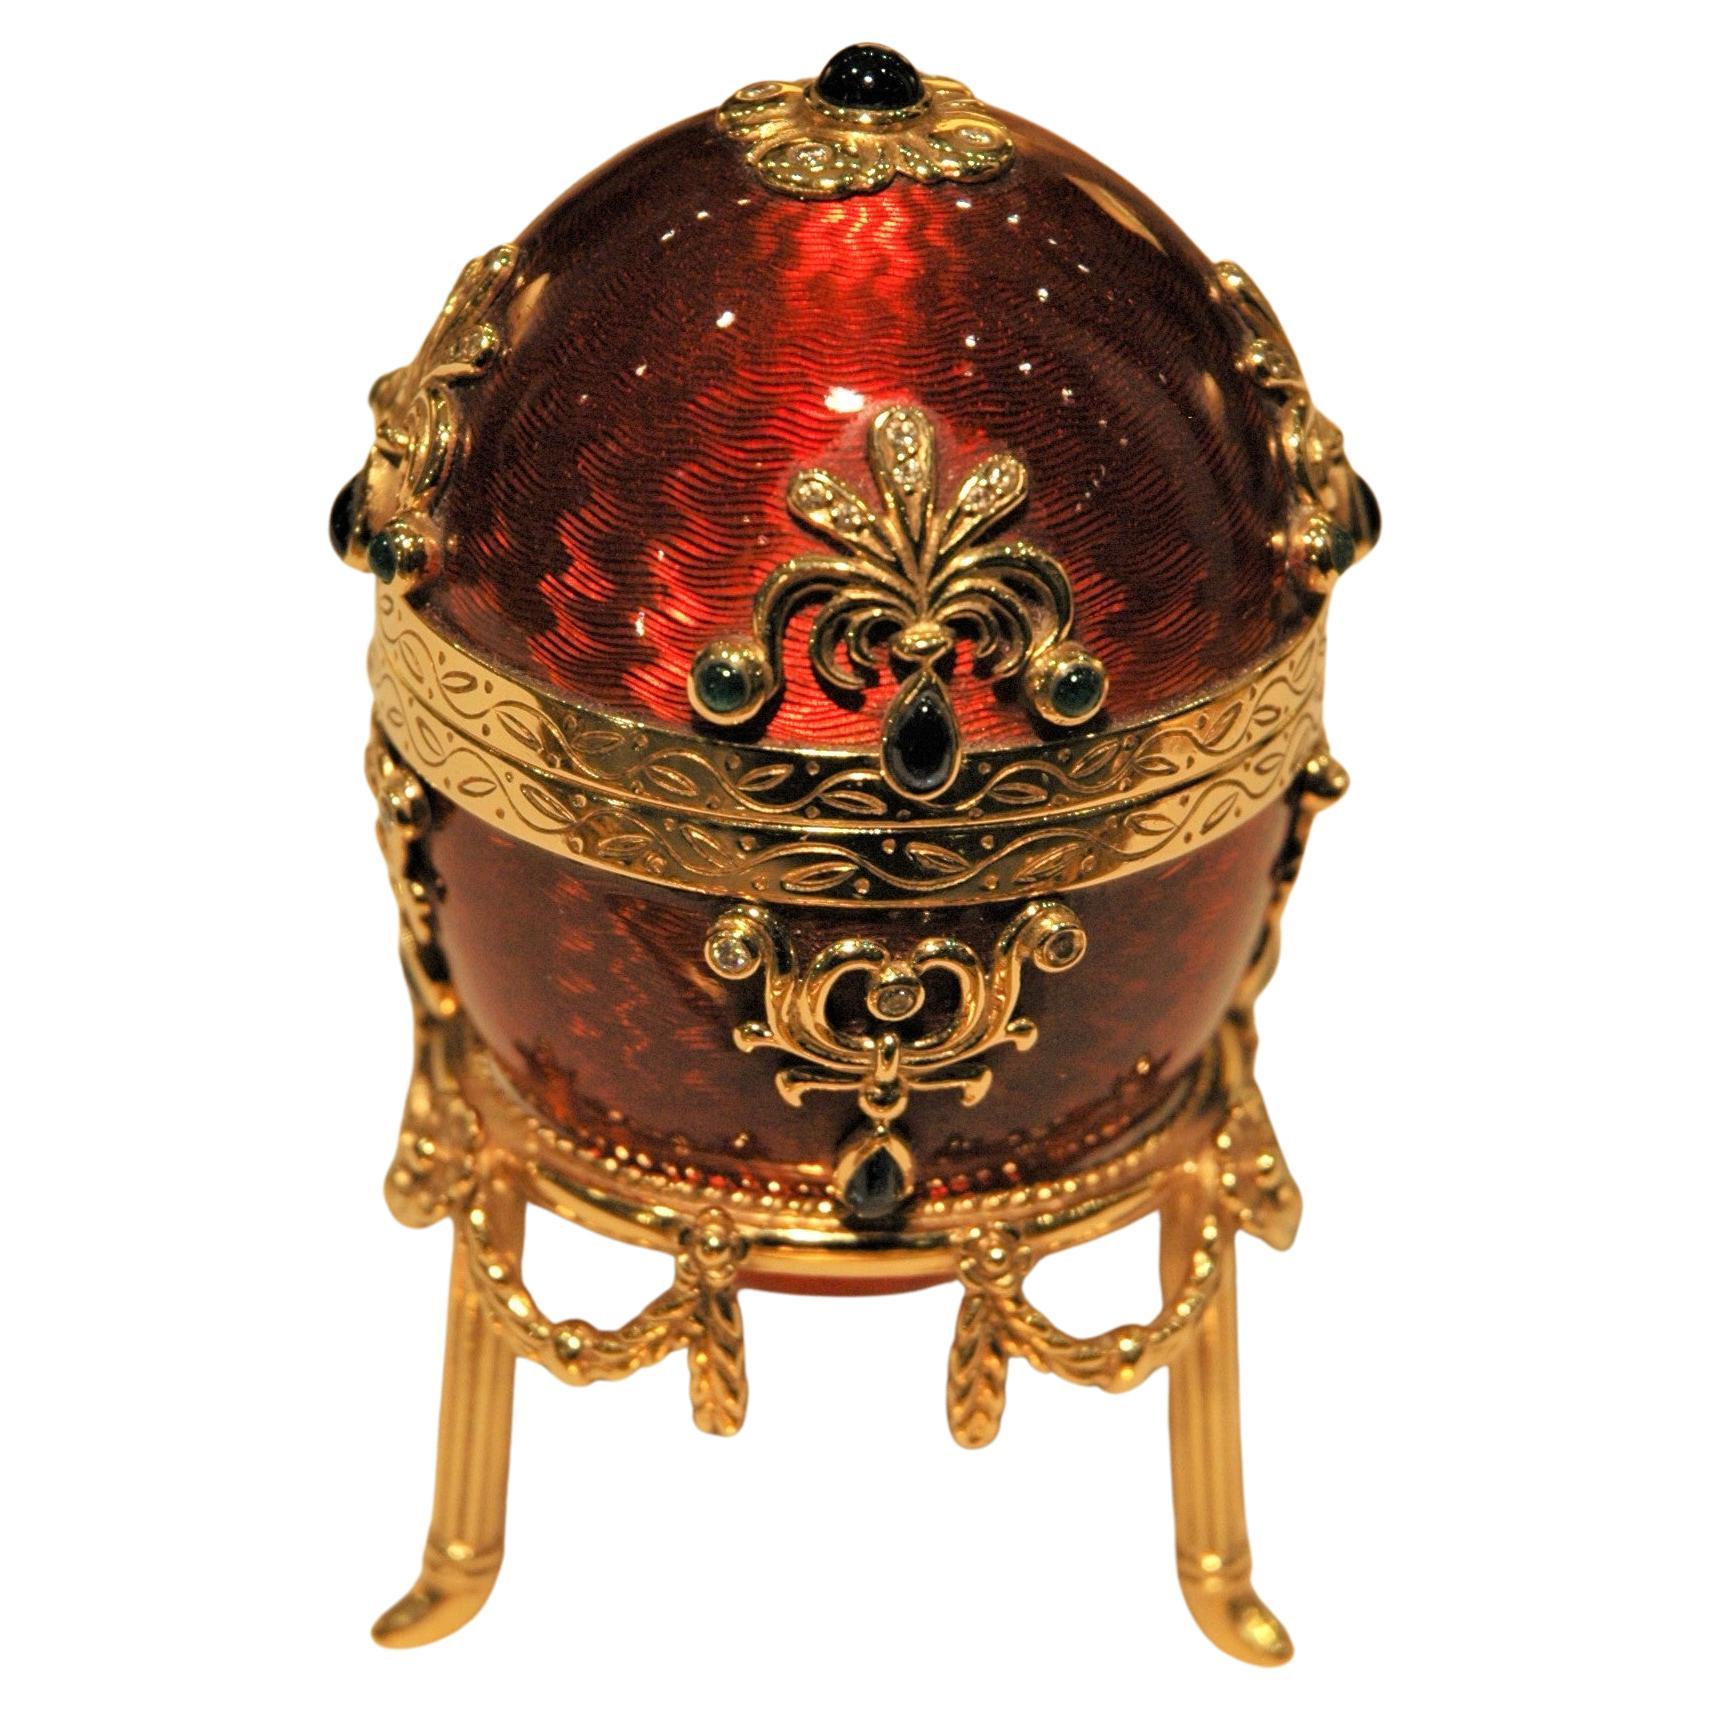 Fabergé 18 Kt Gold Egg Red Enamel with Gold Stand, Emeralds, Sapphires, Diamonds (Oeuf en or 18 Kt émaillé rouge avec Stand en or, émeraudes, saphirs, diamants) en vente